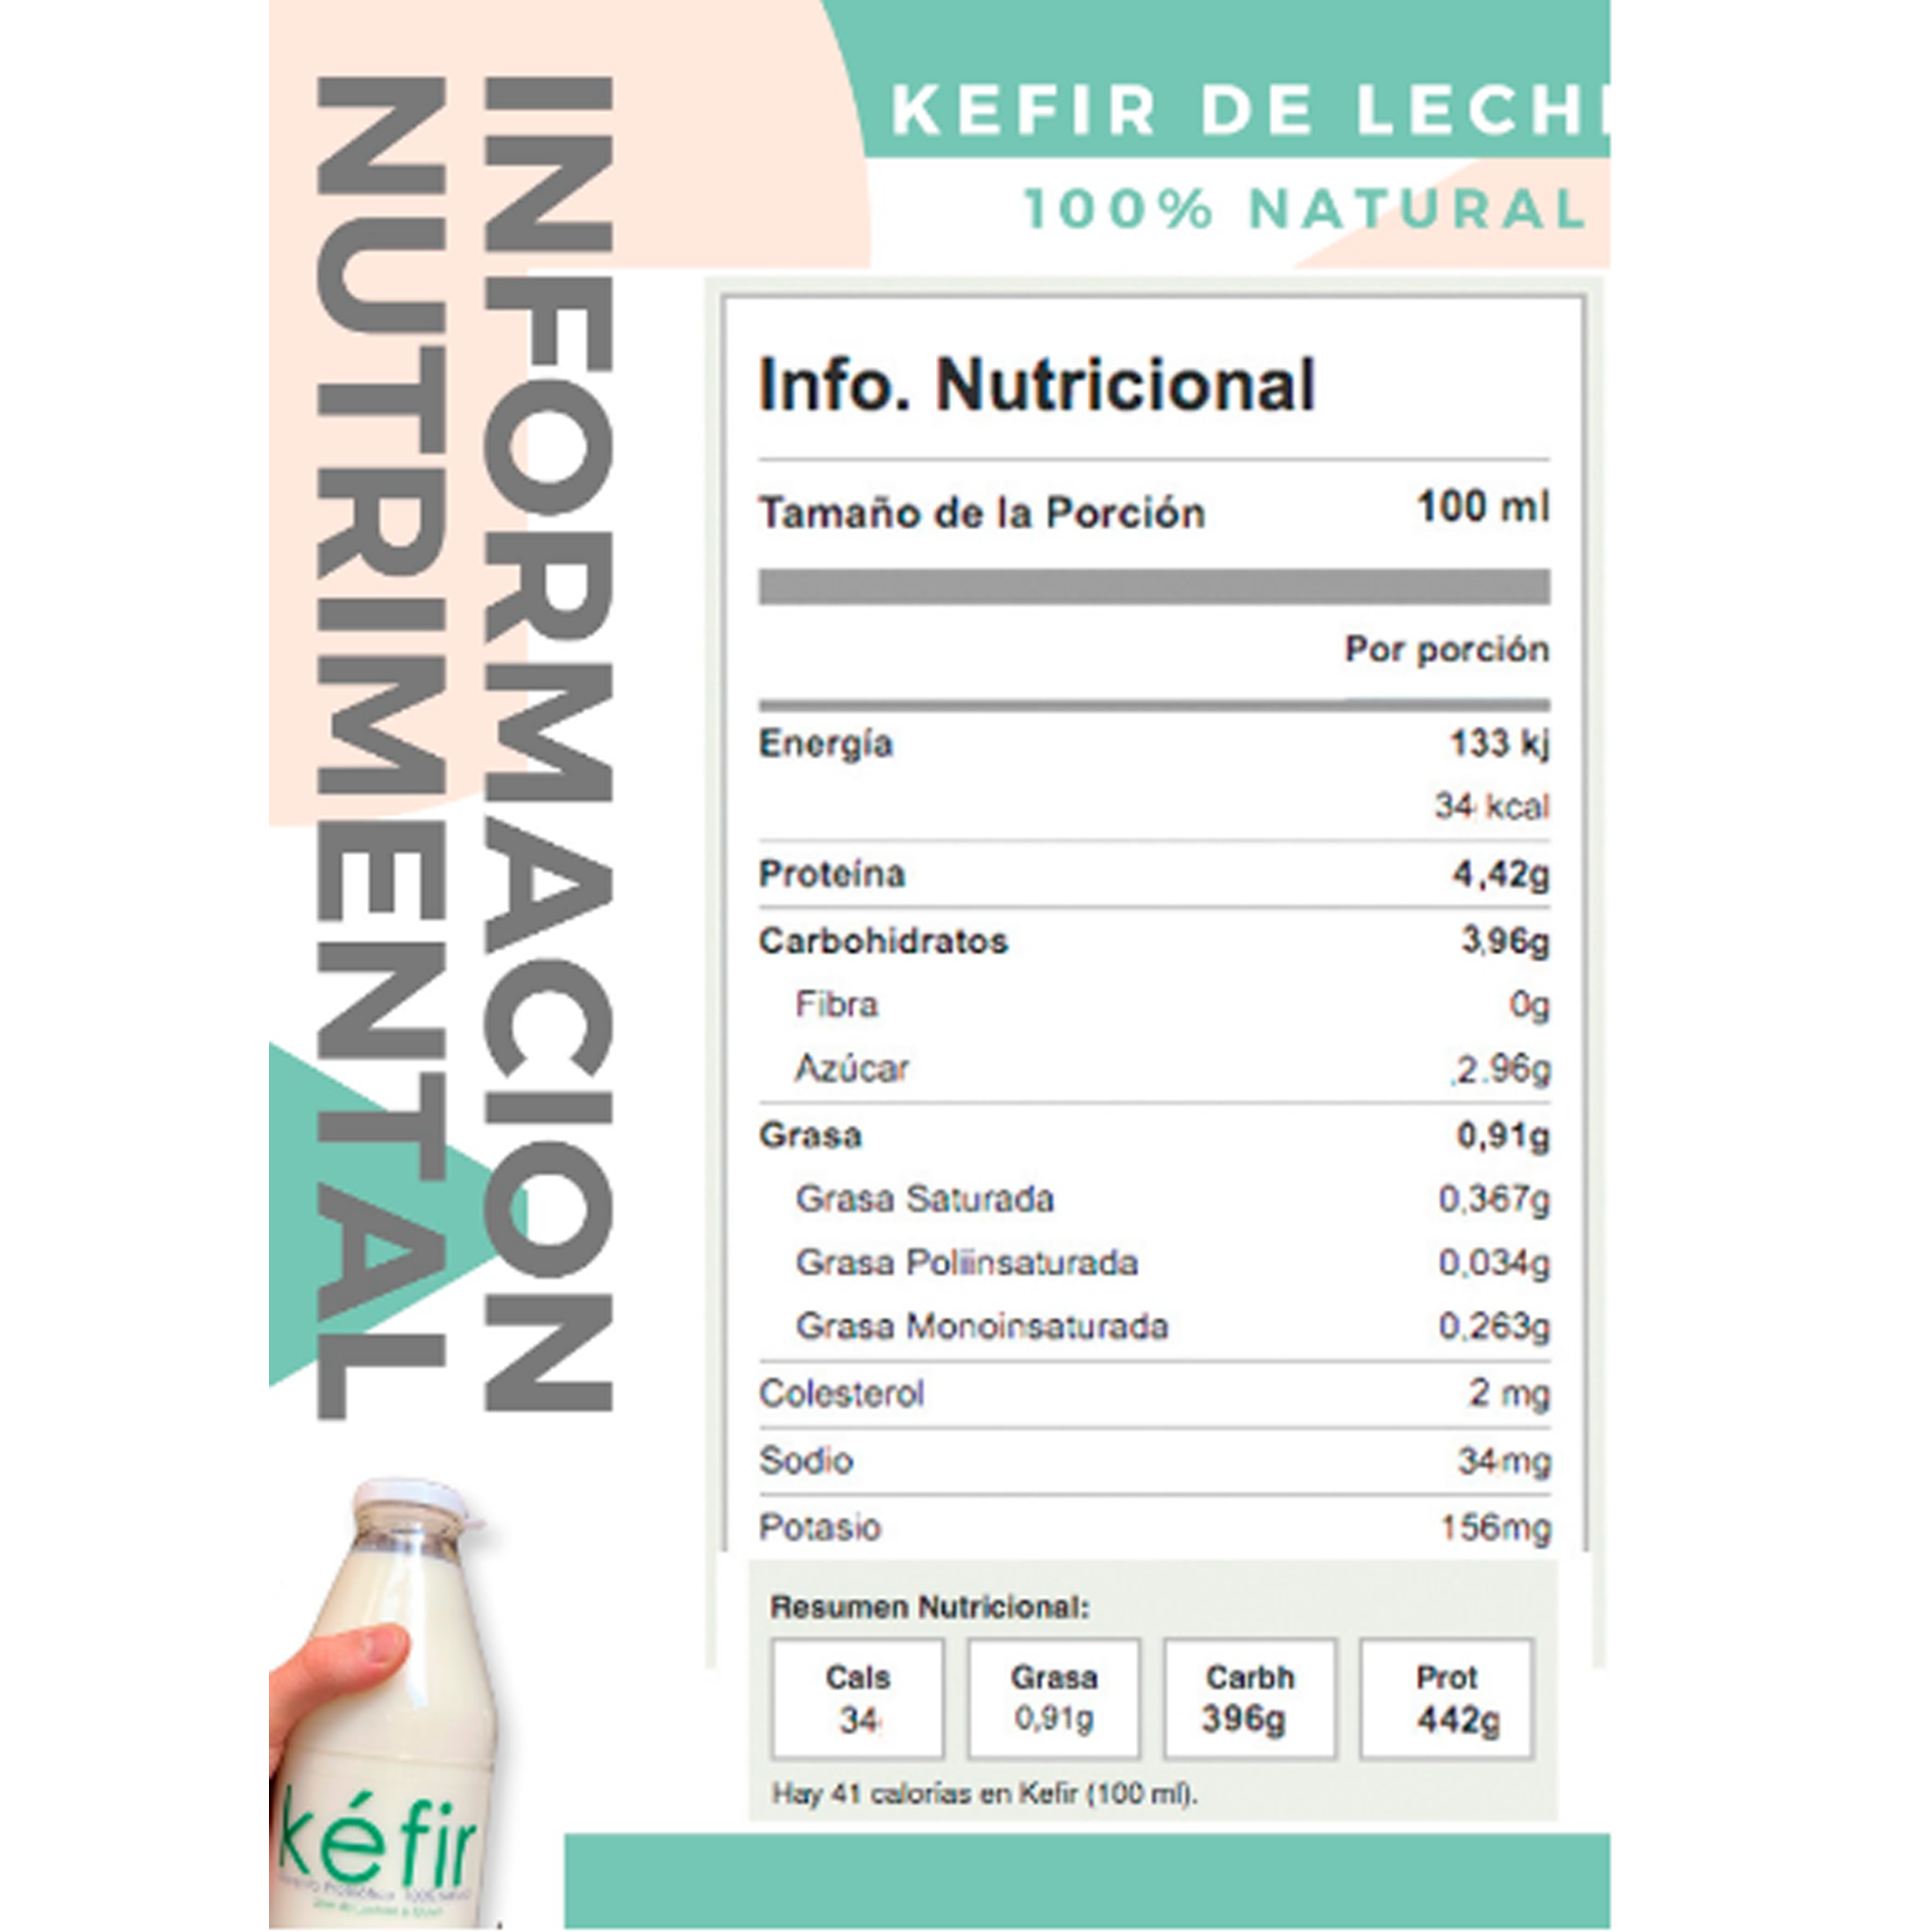 KEFIRGDL- Kefir de leche natural – Cuatro Biomarket